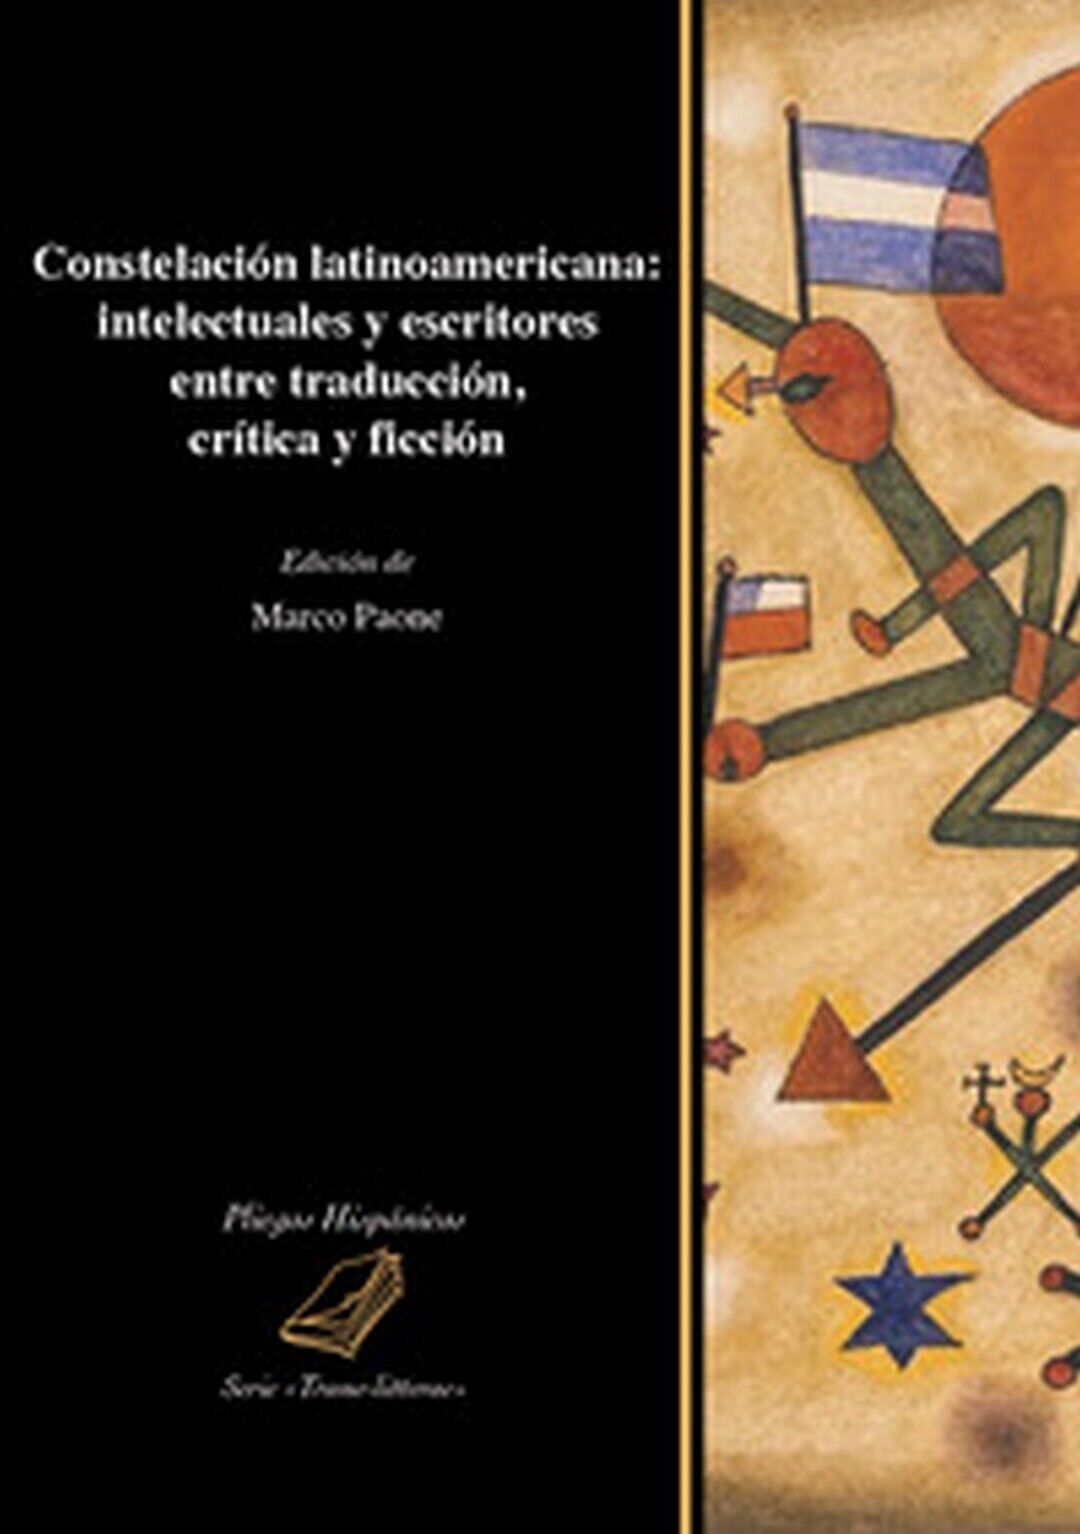 Constelaci?n latinoamericana: intelectuales y escritores entre traducci?n, cr?ti